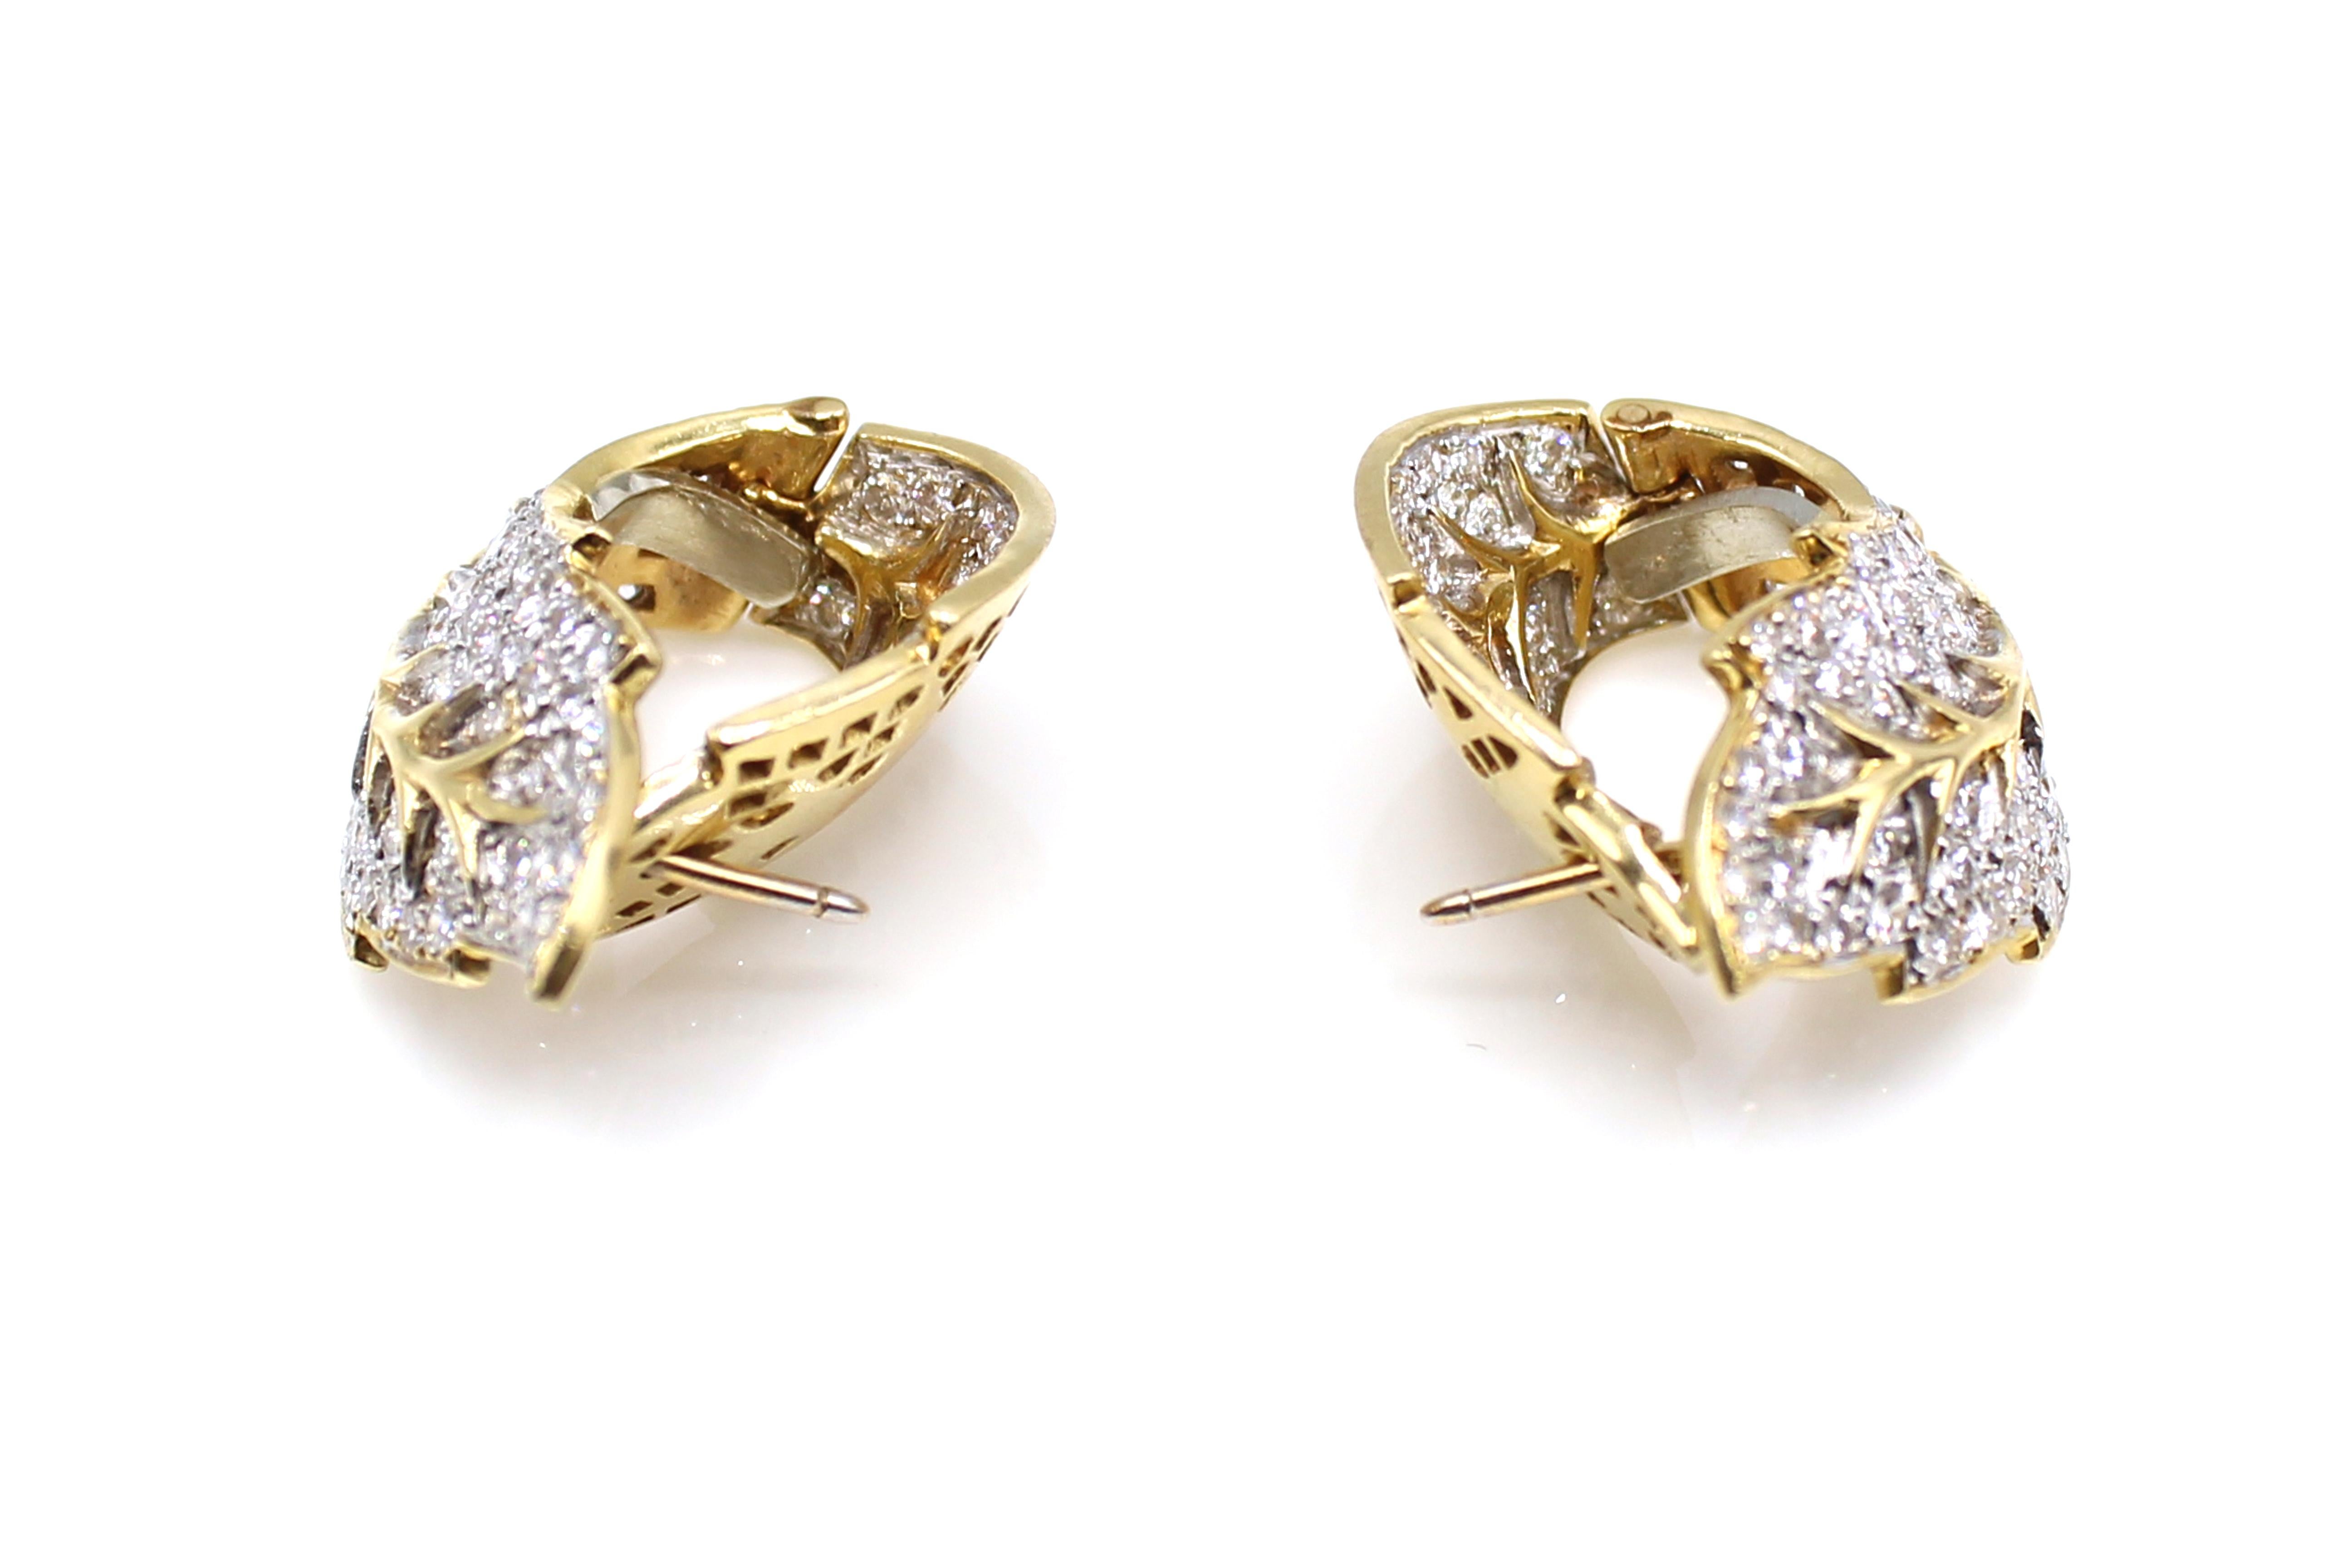 Fabriqués de main de maître en or jaune 18 carats, ces clips d'oreille sont magnifiquement conçus comme des feuilles vivantes. Légèrement courbés, ces clips d'oreille ont un aspect tridimensionnel et les diamants blancs et étincelants donnent vie à